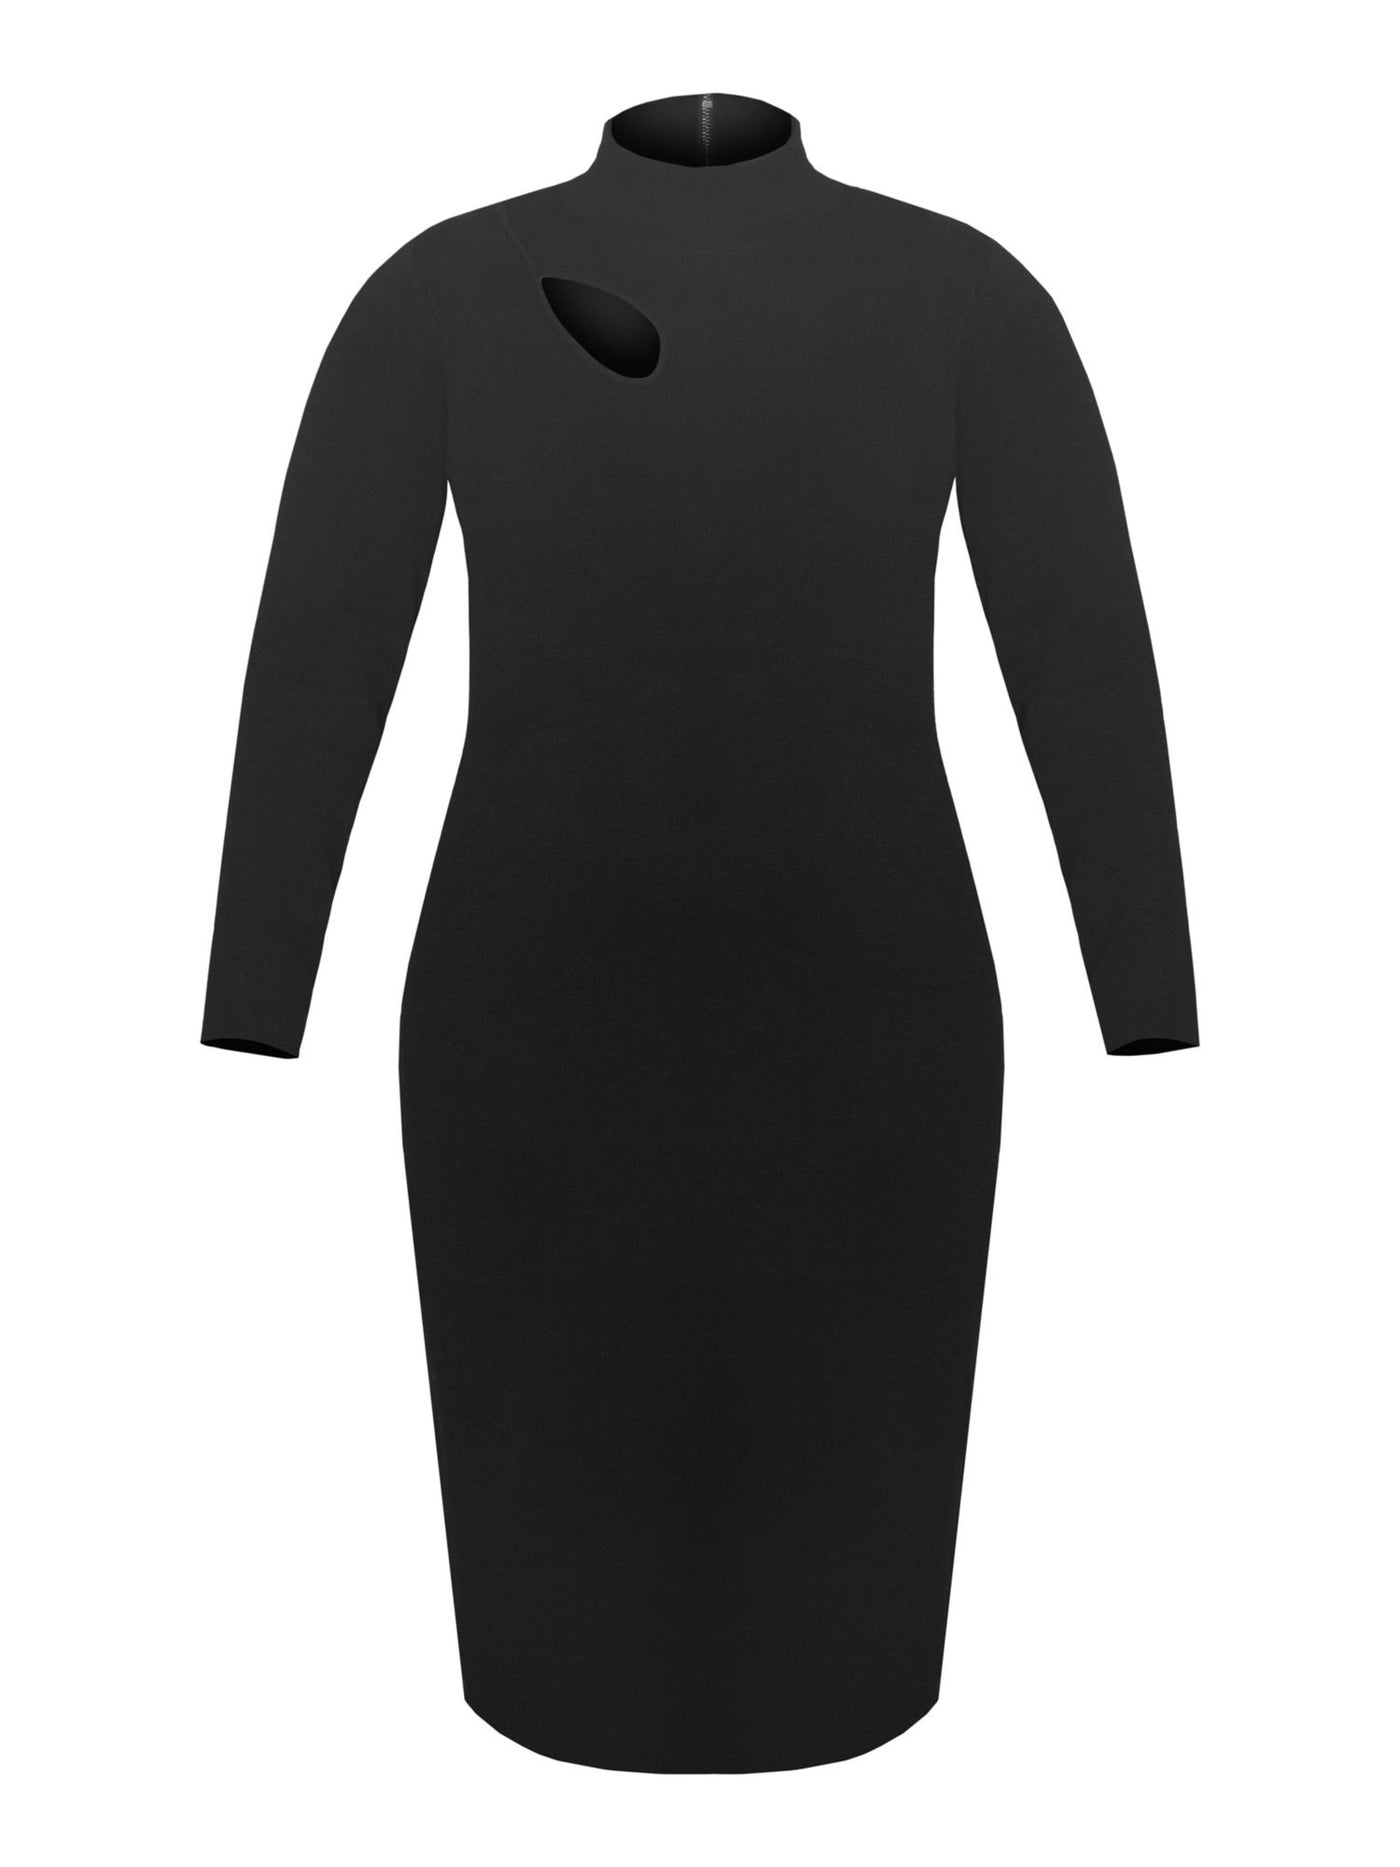 RACHEL RACHEL ROY Womens Black Stretch Cut Out Zippered Unlined Long Sleeve Mock Neck Midi Wear To Work Sweater Dress Plus 1X